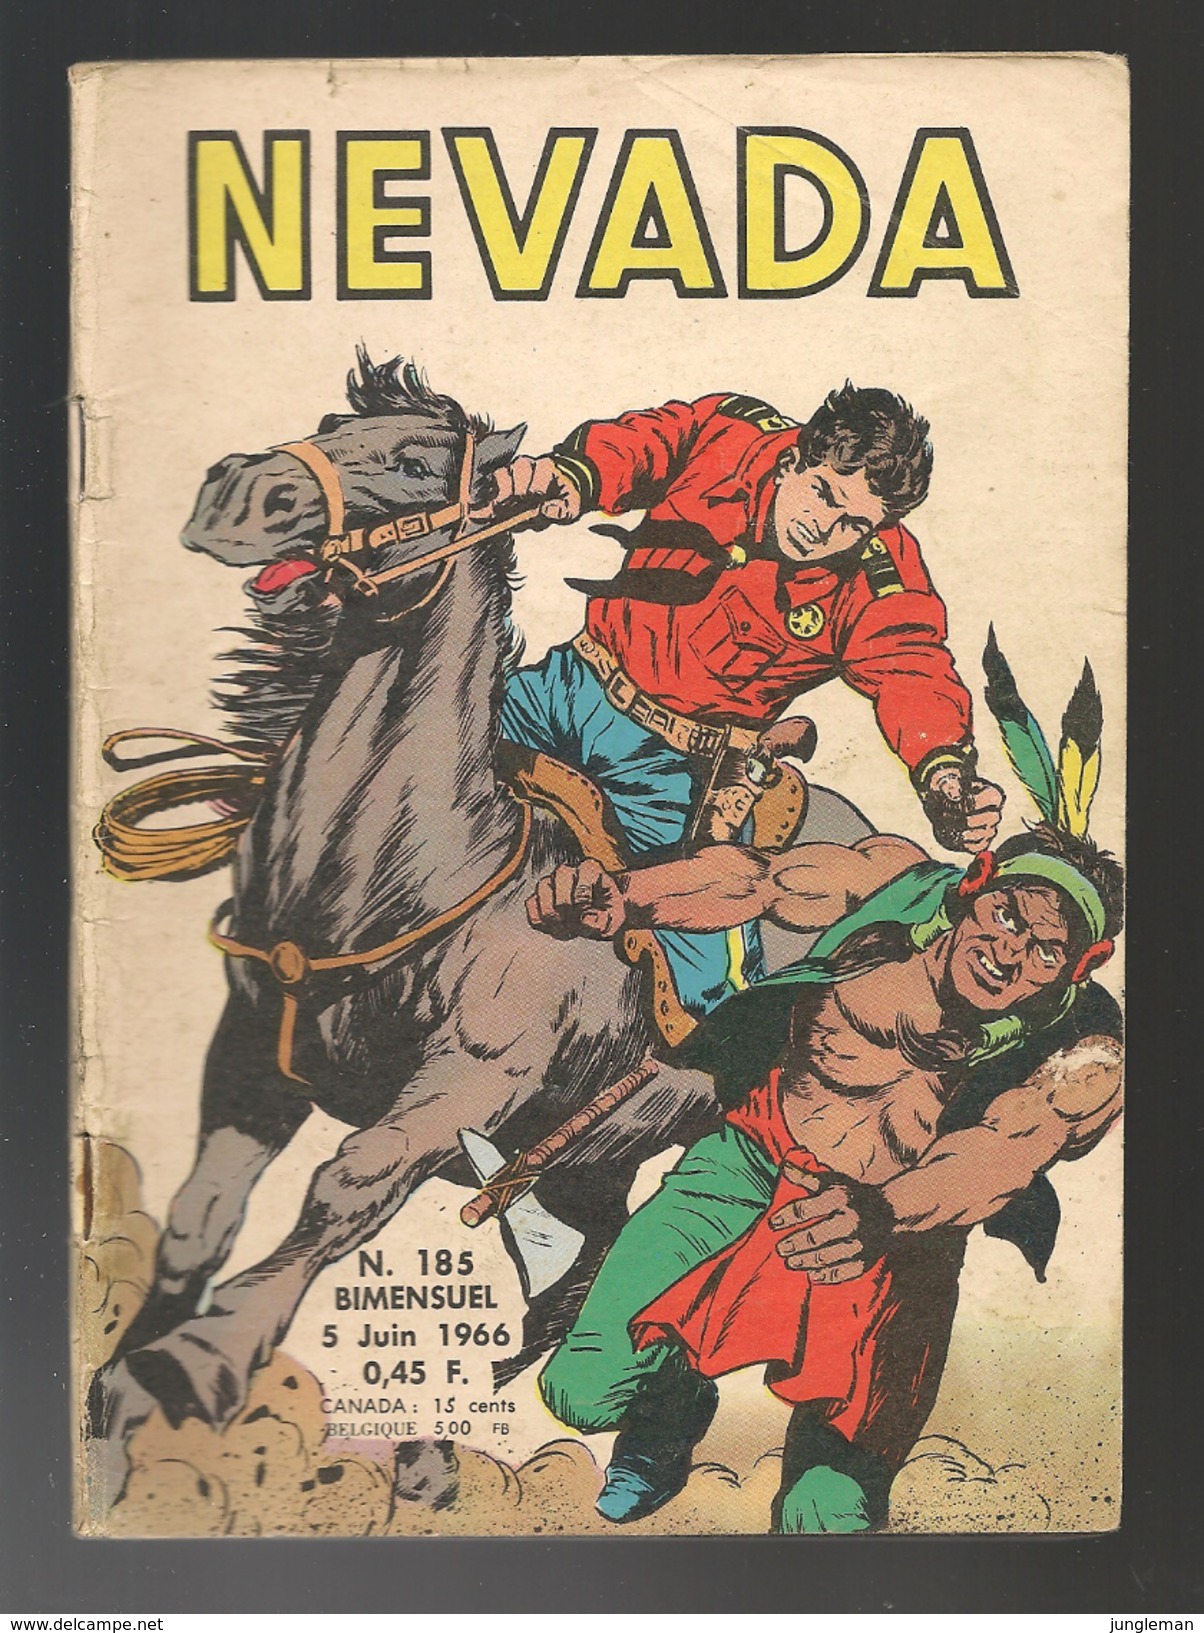 Nevada N° 185 - Editions LUG à Lyon - Juin 1966 - Avec Miki Le Ranger Et Tamar Le Roi De La Jungle - BE - Nevada